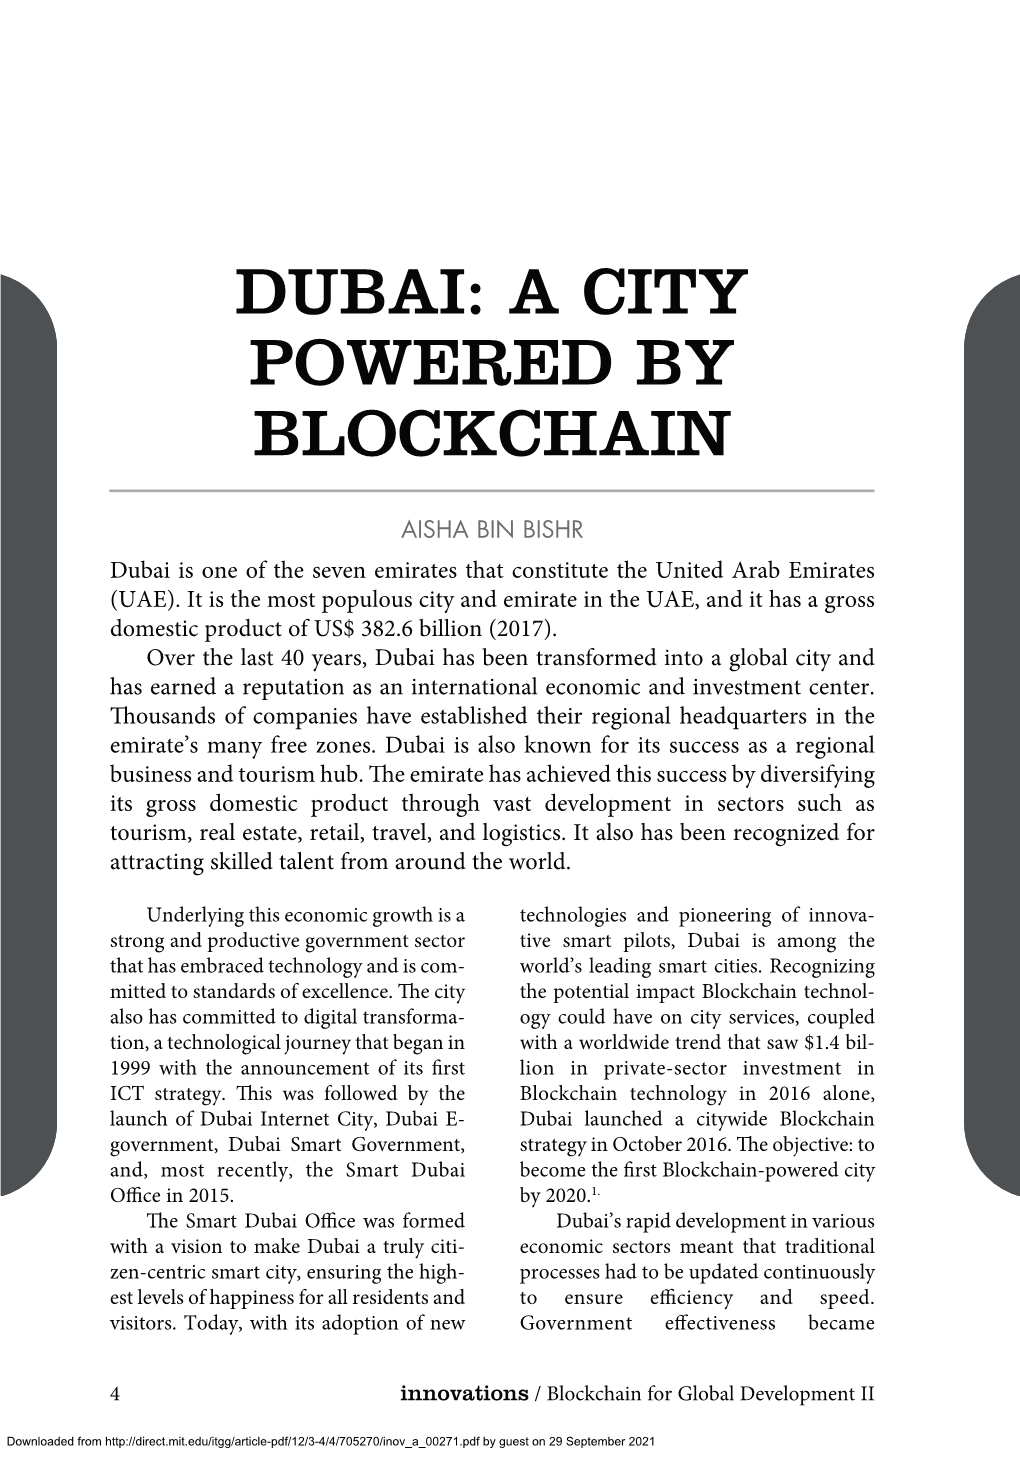 Dubai: a City Powered by Blockchain